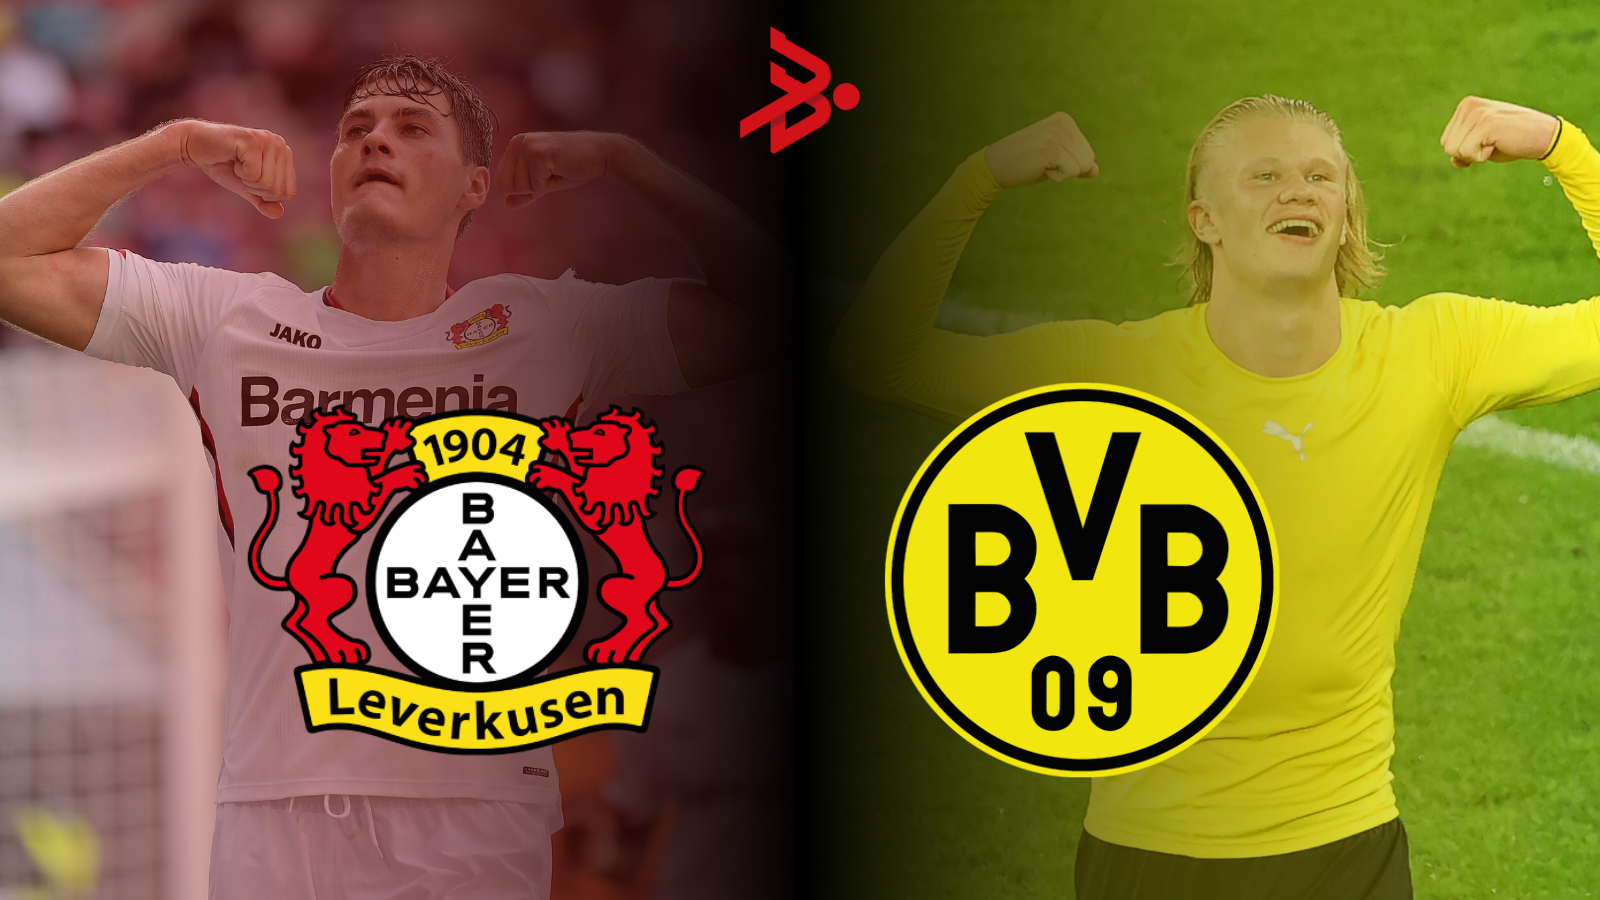 Patrick Schick y Erling Haaland pondrán el show en las áreas del Bayer Leverkusen - Borussia Dortmund. Fotos: Imago.